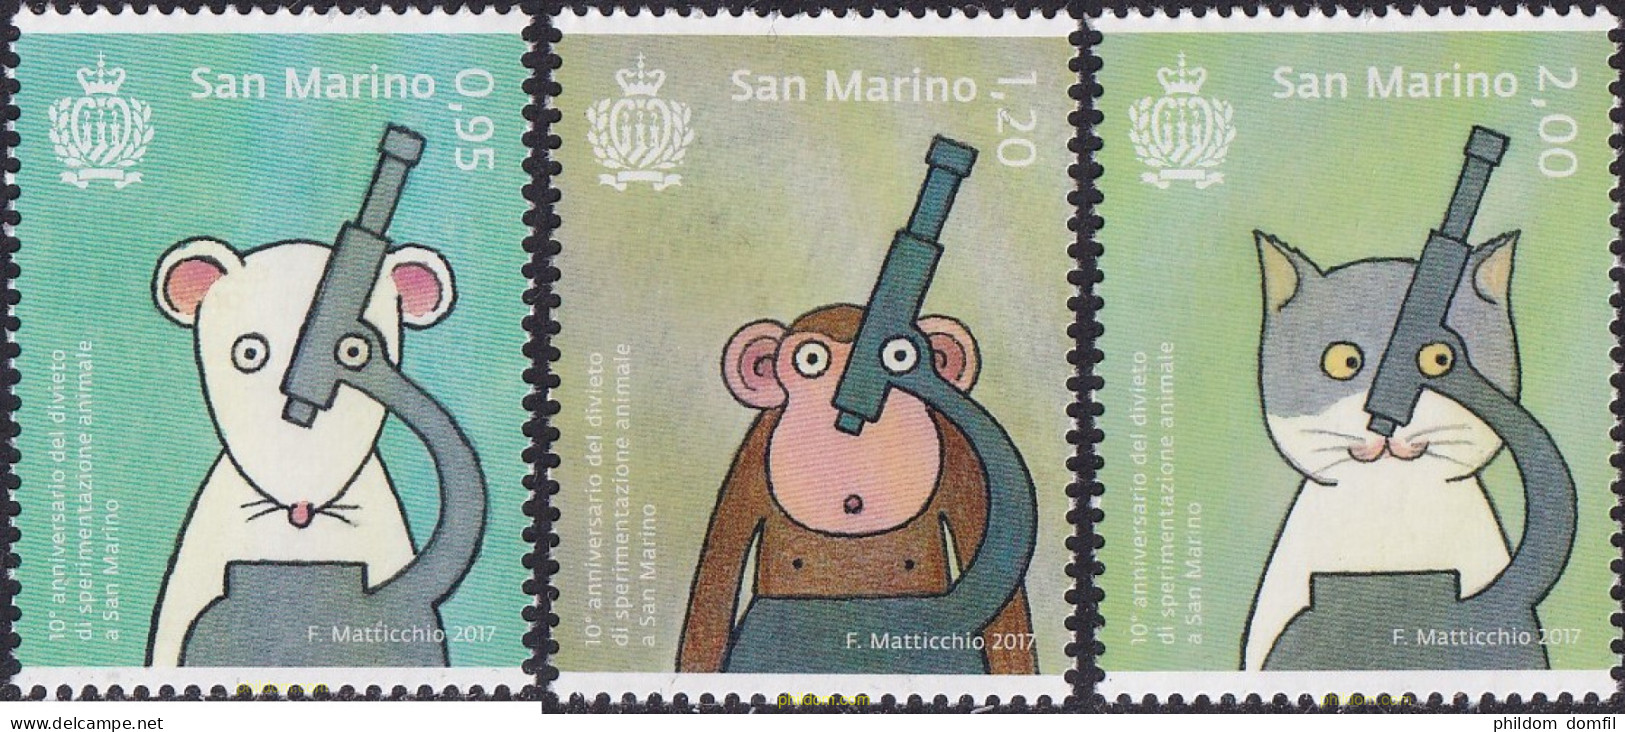 705108 MNH SAN MARINO 2017 ANIVERSARIO DE LA PROHIBICIÓN DE EXPERIMENTAR CON ANIMALES - Unused Stamps